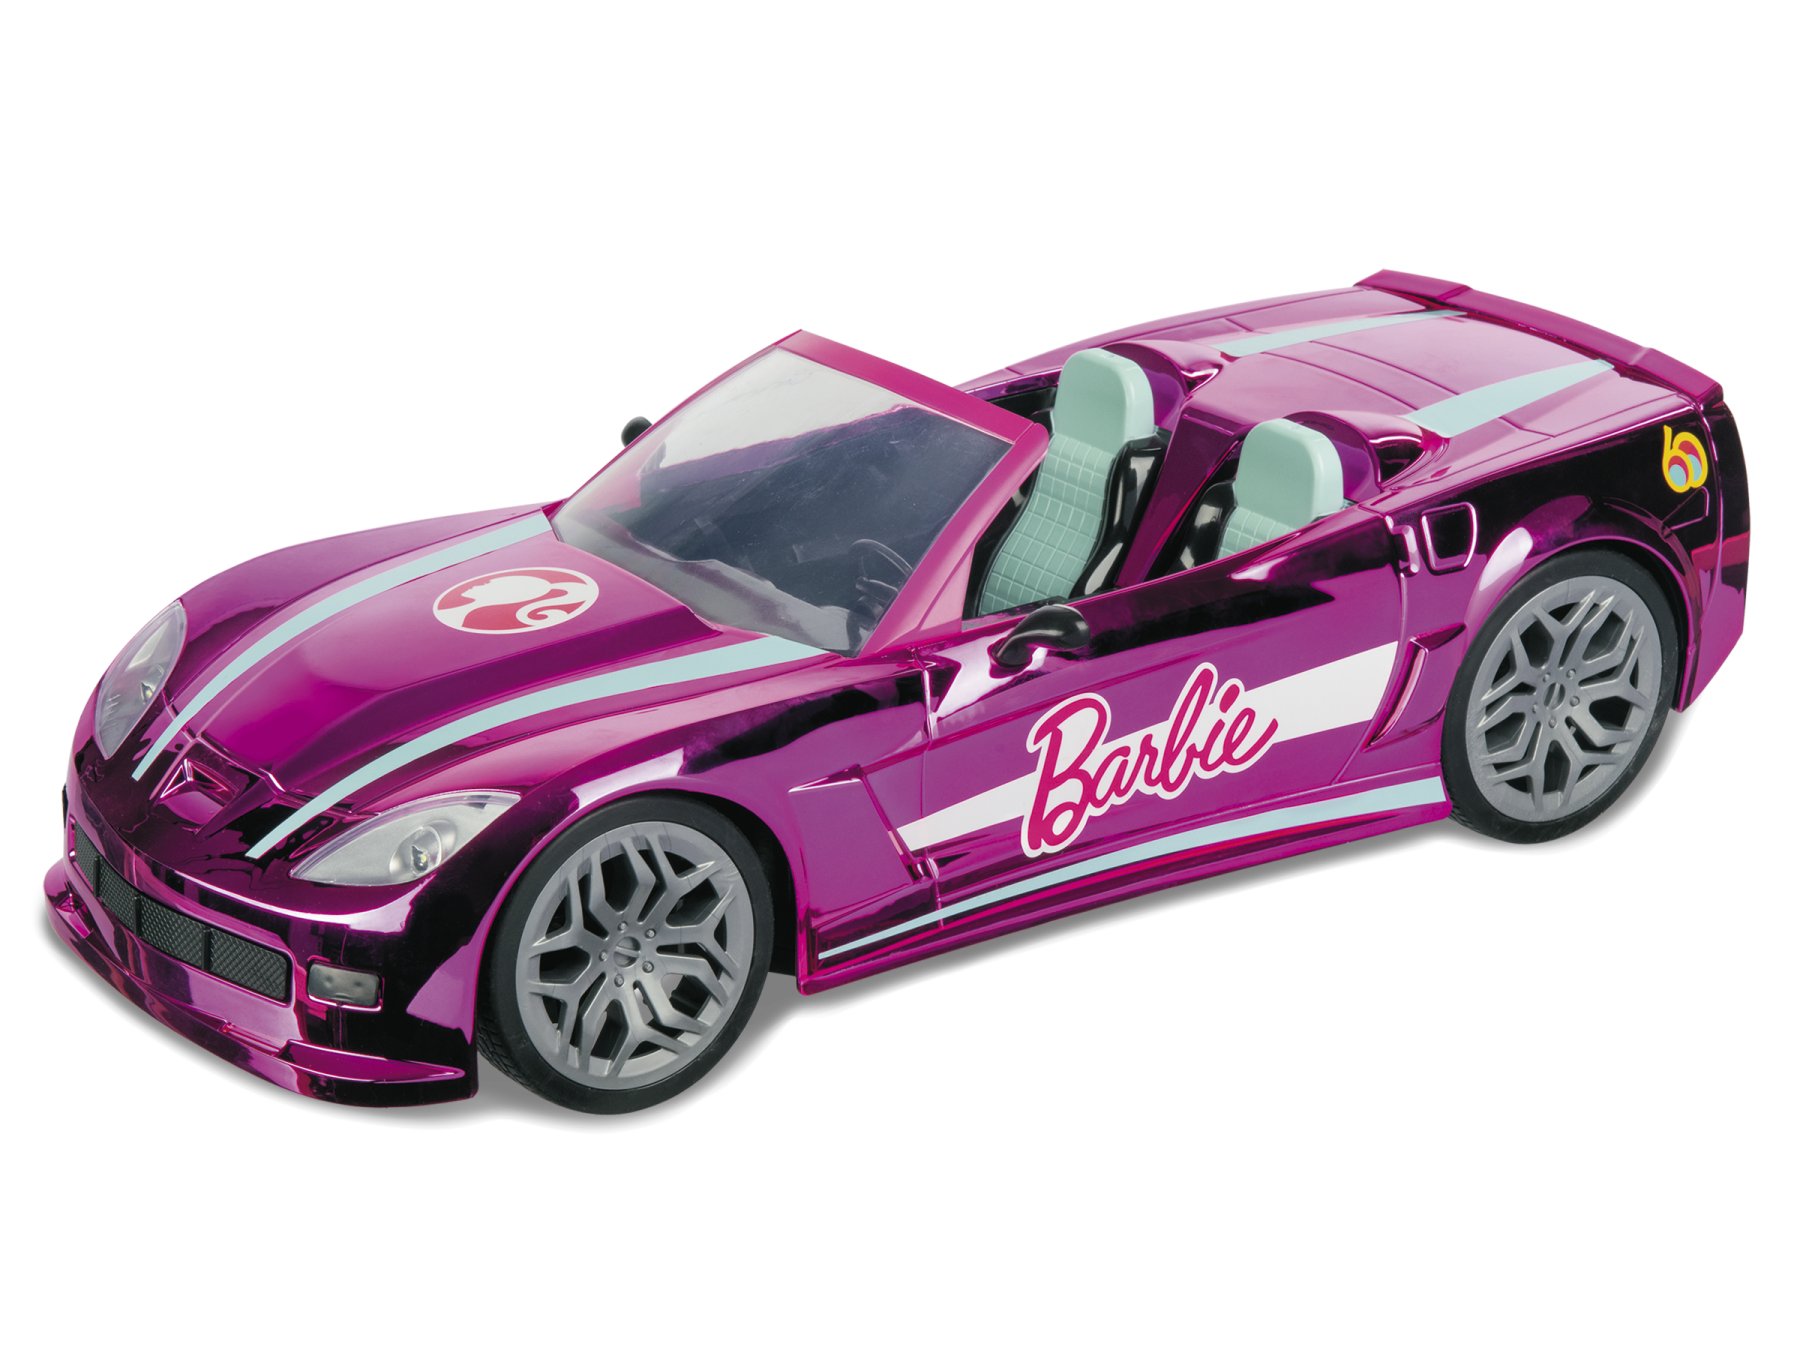 Barbie dream car radiocomandata mondomotors. design originale barbie - Barbie